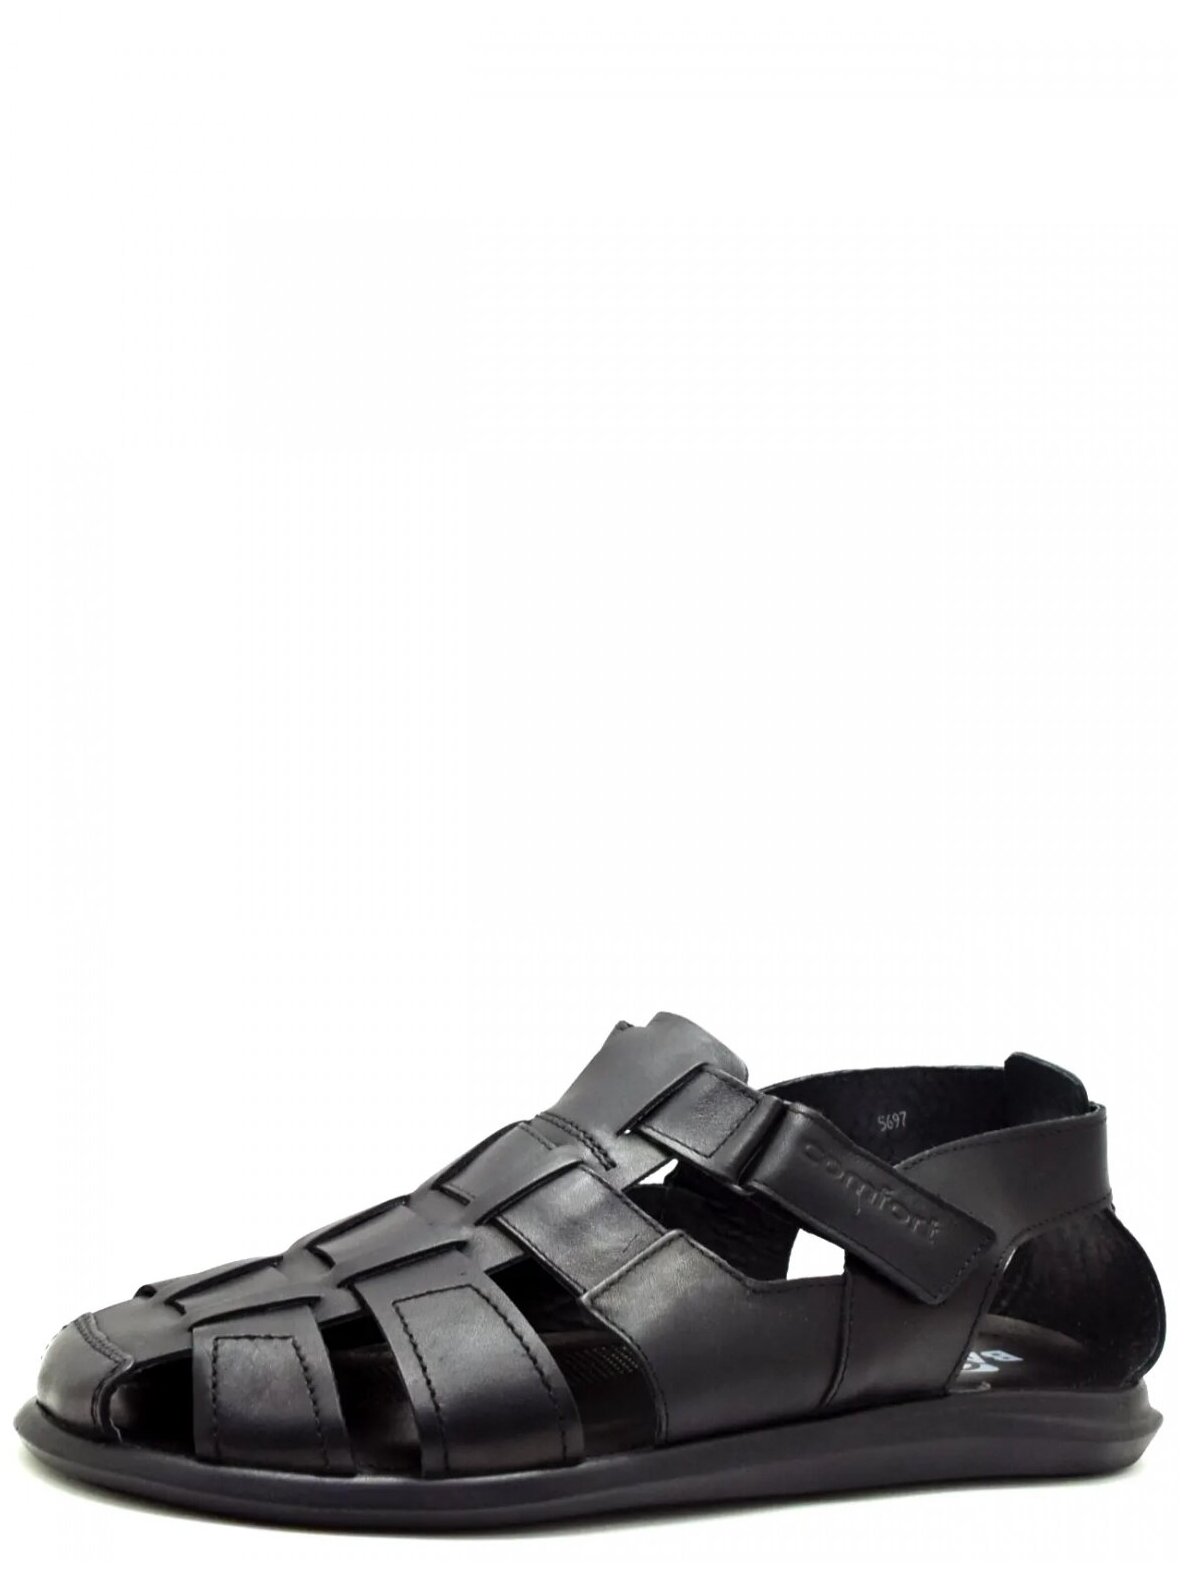 Fidgi 22D5697L/46V мужские сандали черный натуральная кожа